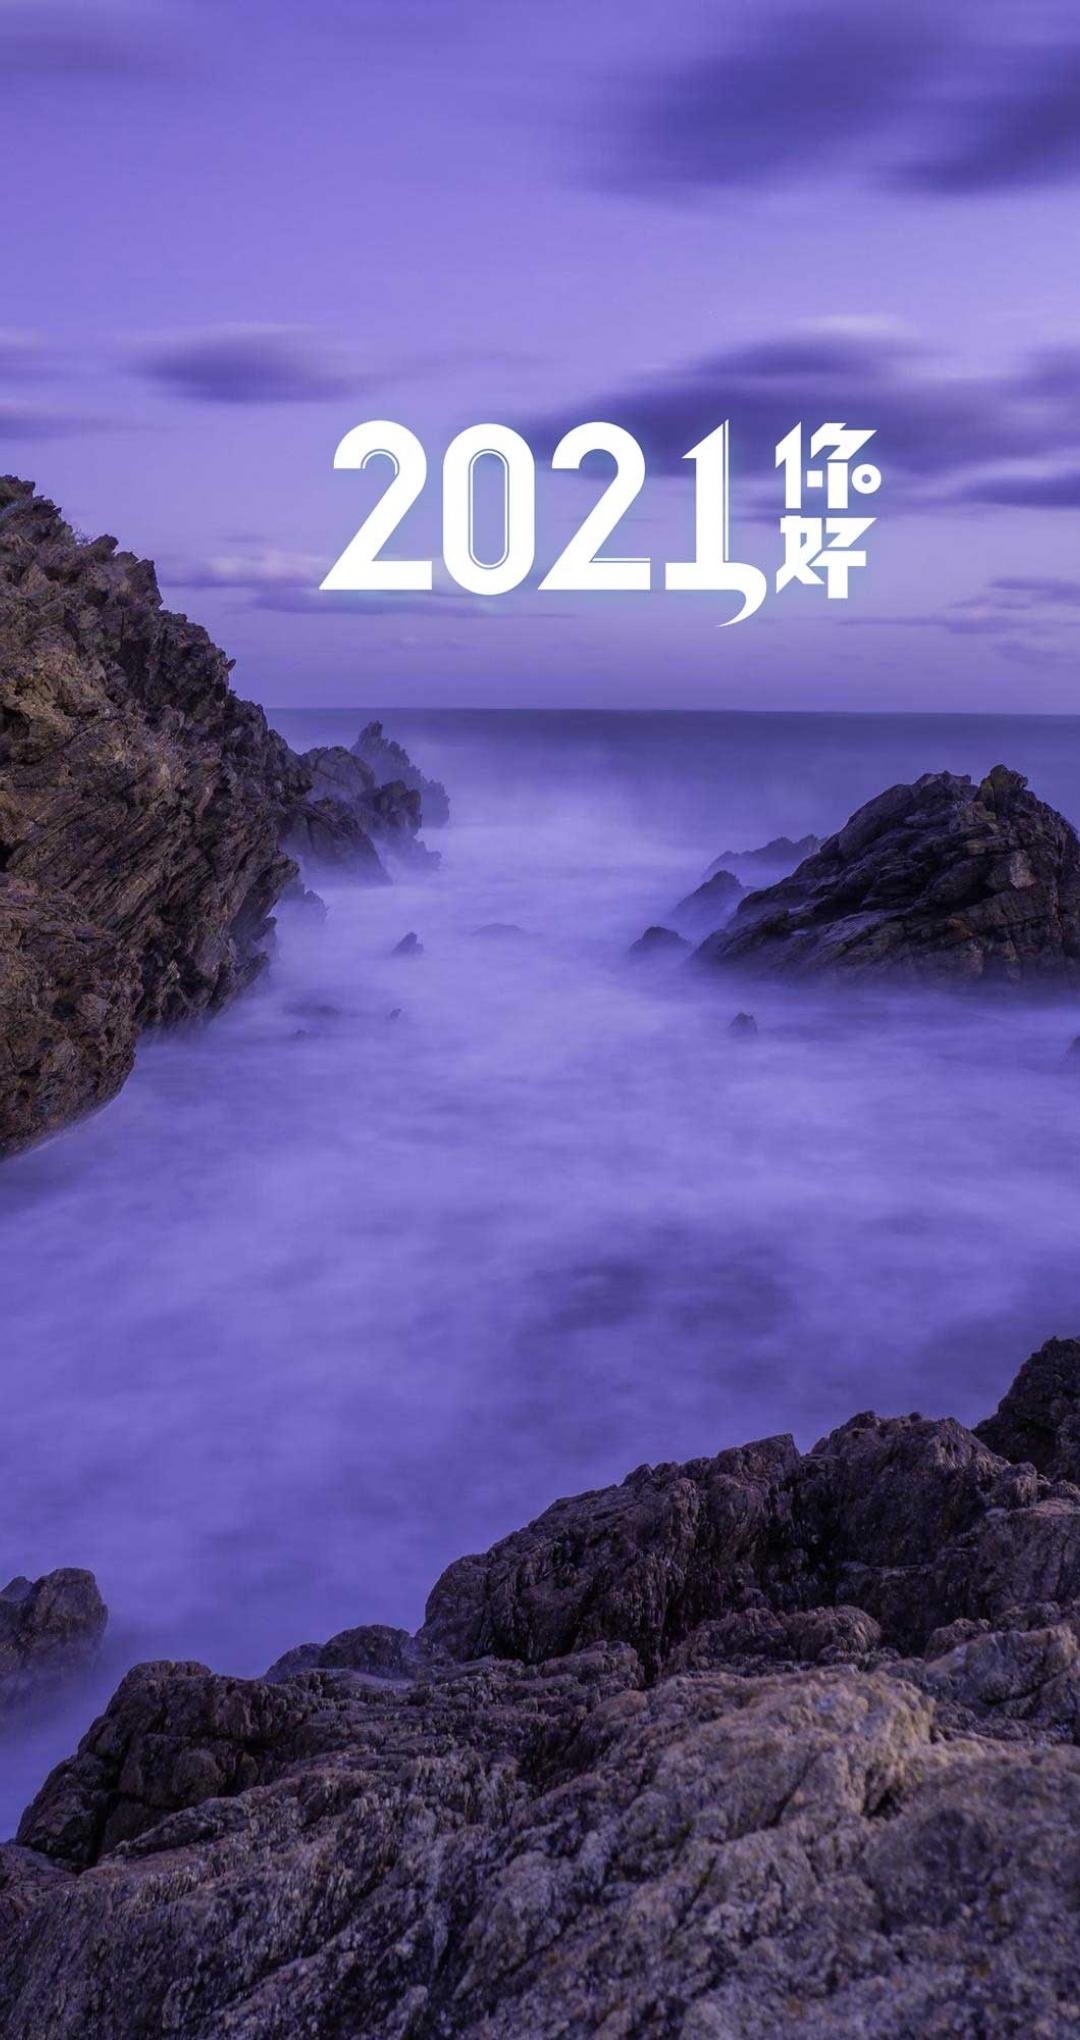 2021你好唯美大海风光,高清图片,手机壁纸